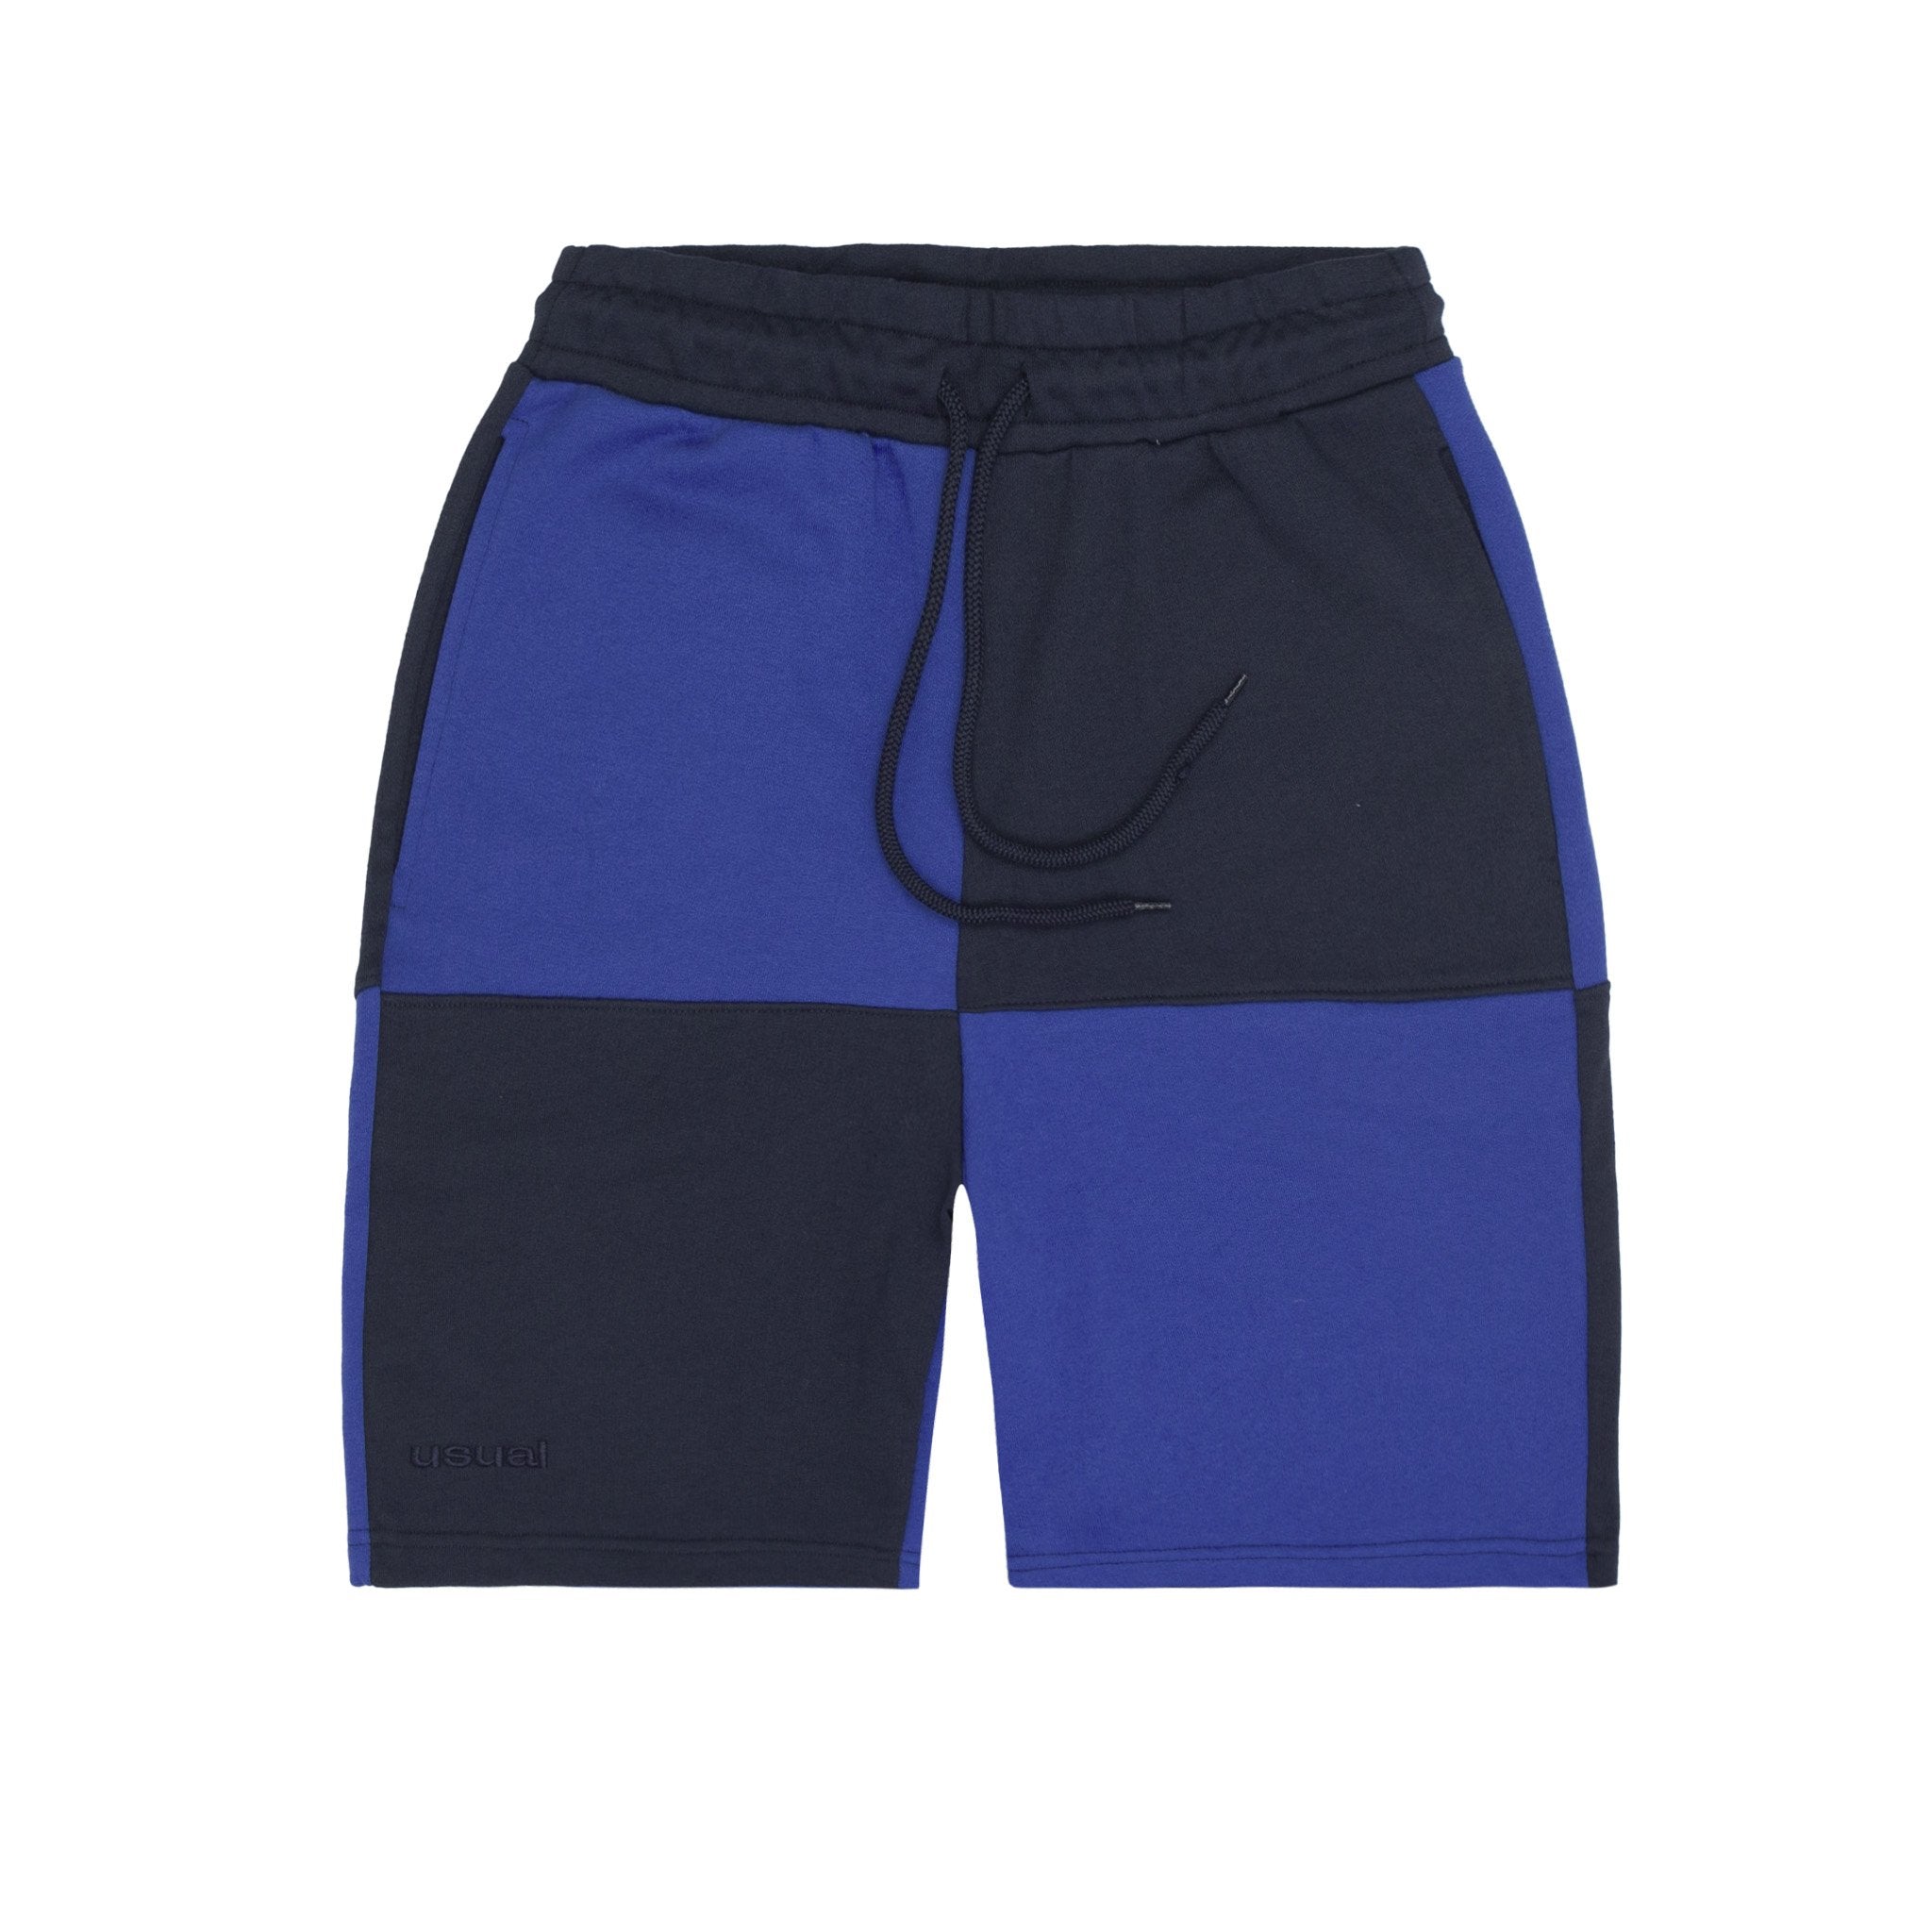 Usual - Big Check Shorts Royal Blue